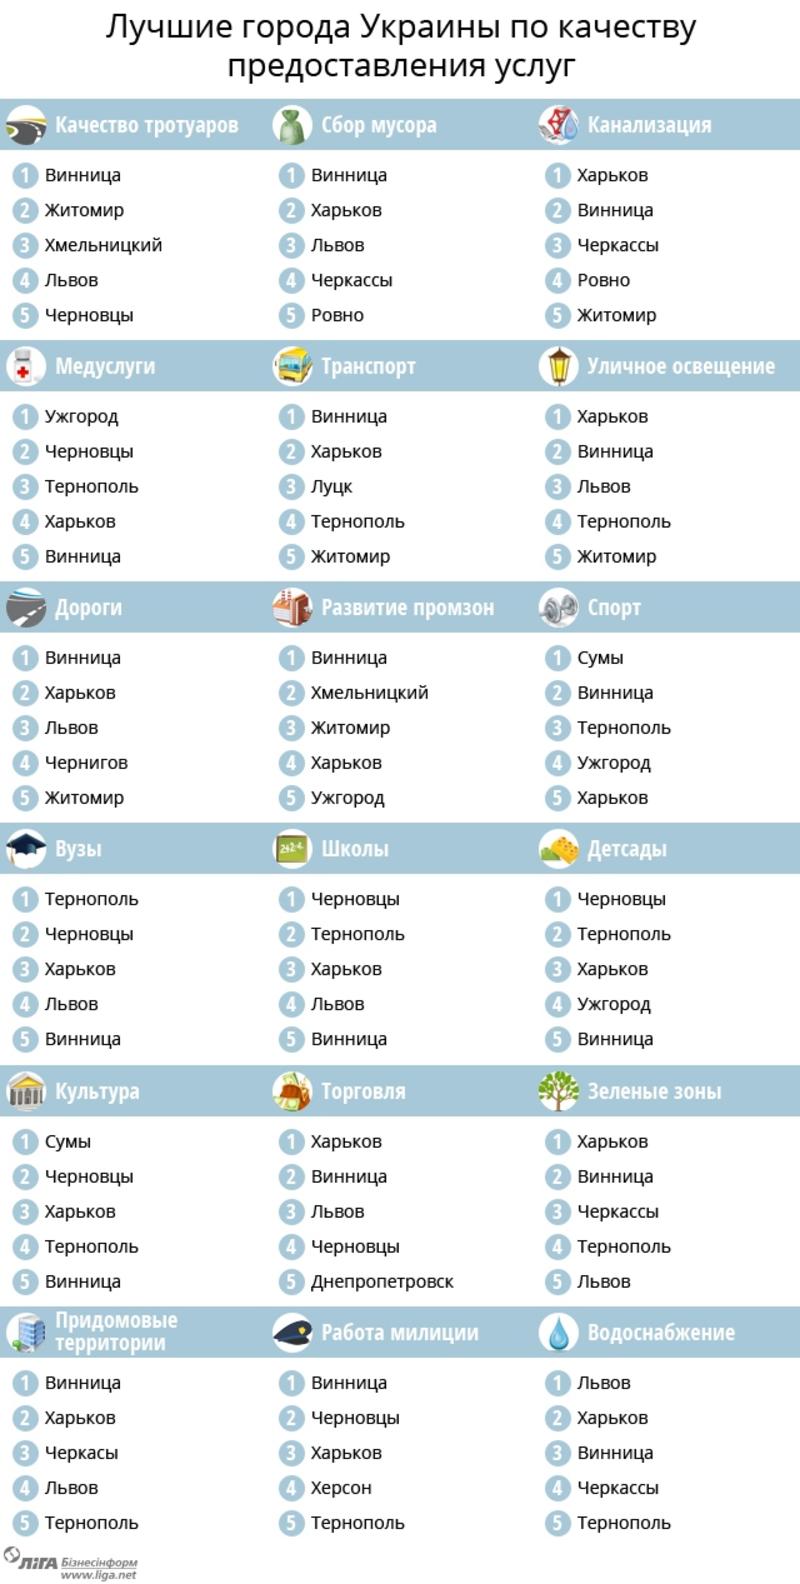 Рейтинг городов: где в Украине жить хорошо / ЛигаБизнесИнформ